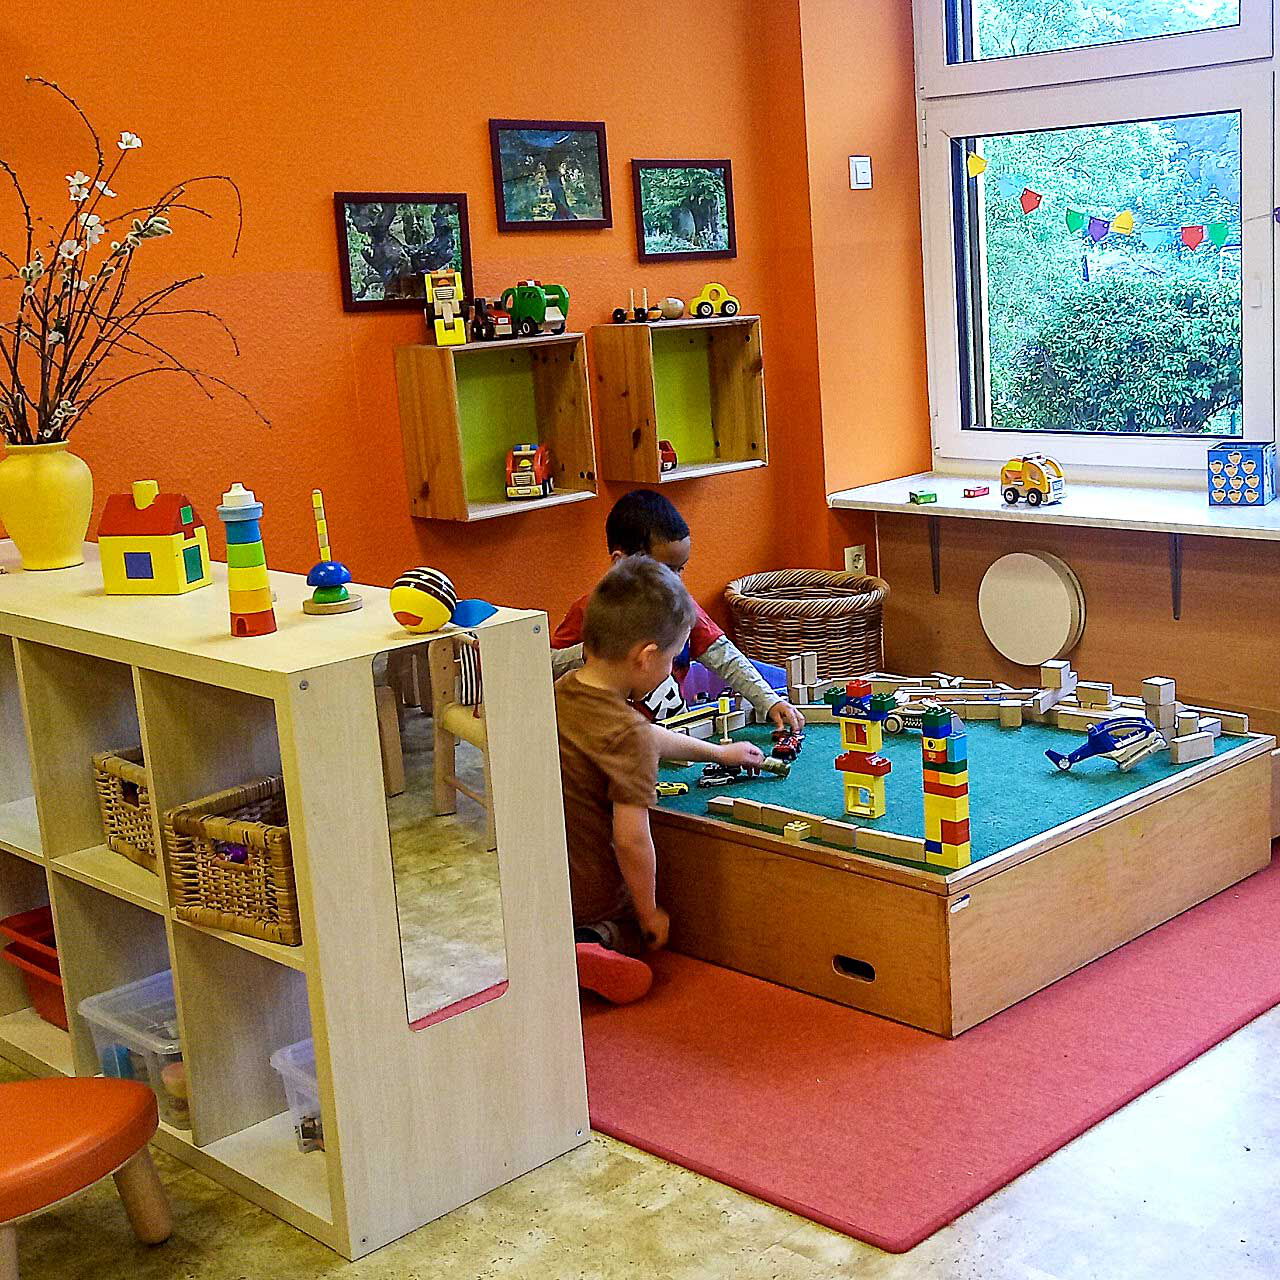 In der Ecke des Raumes ist ein Bauspiel auf dem zwei Kleinkinder mit Bausteinen spielen und bauen.